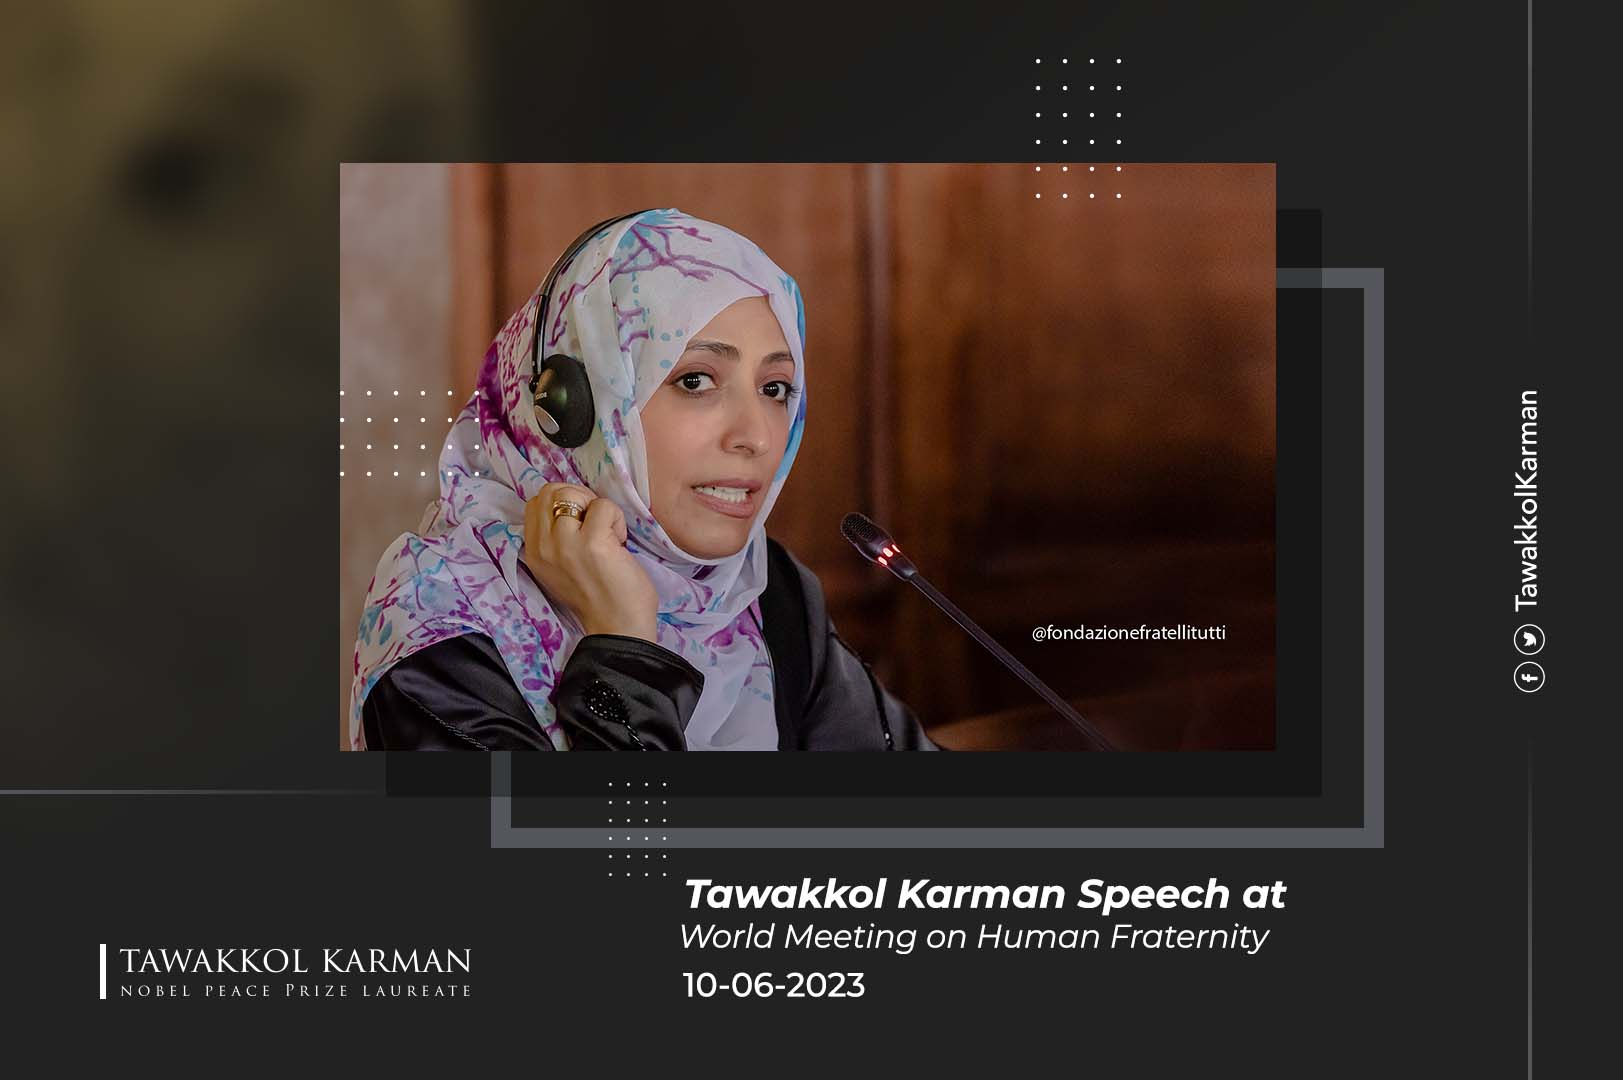 Tawakkol Karman Speech at World Meeting on Human Fraternity